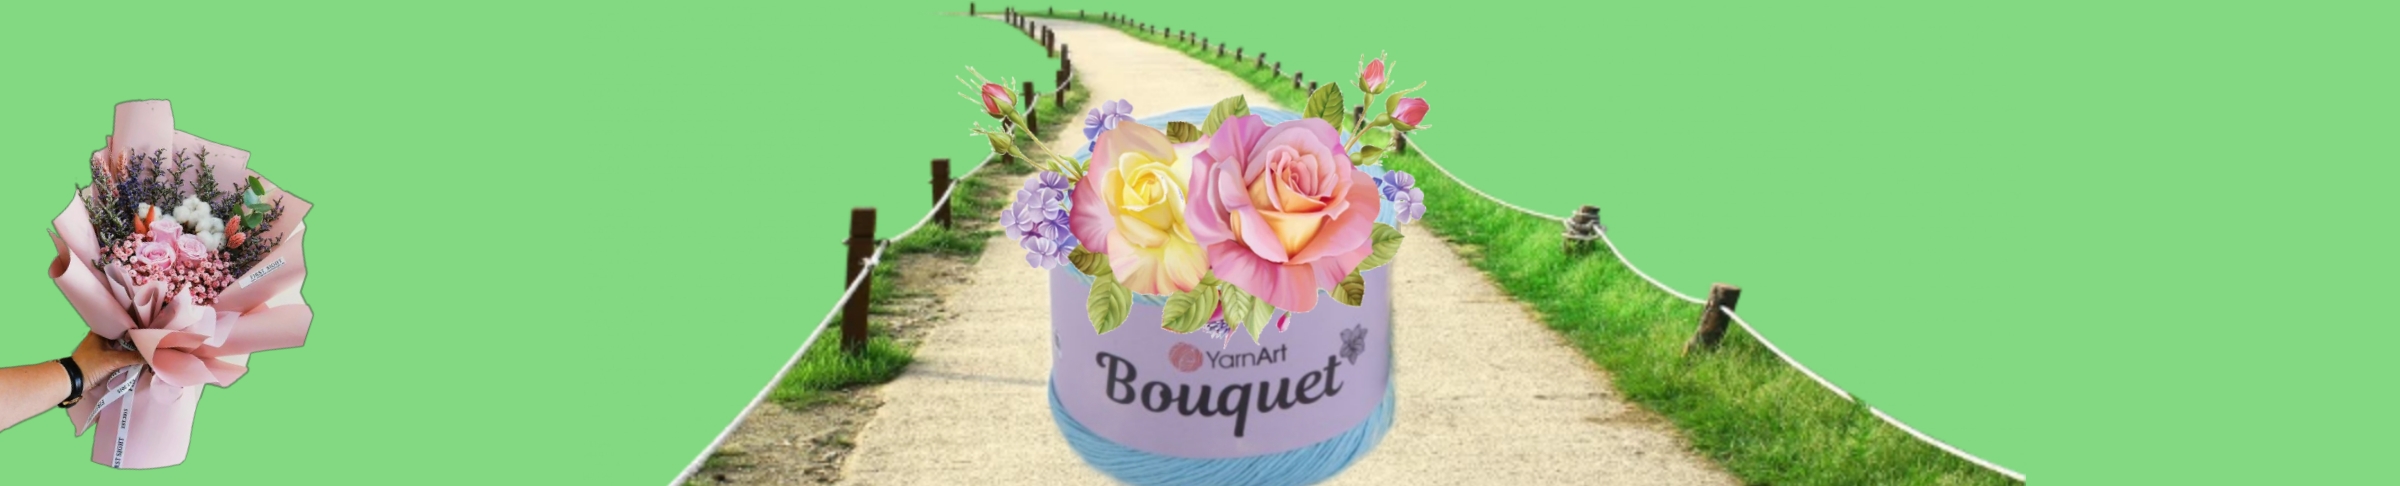 YarnArt Bouquet